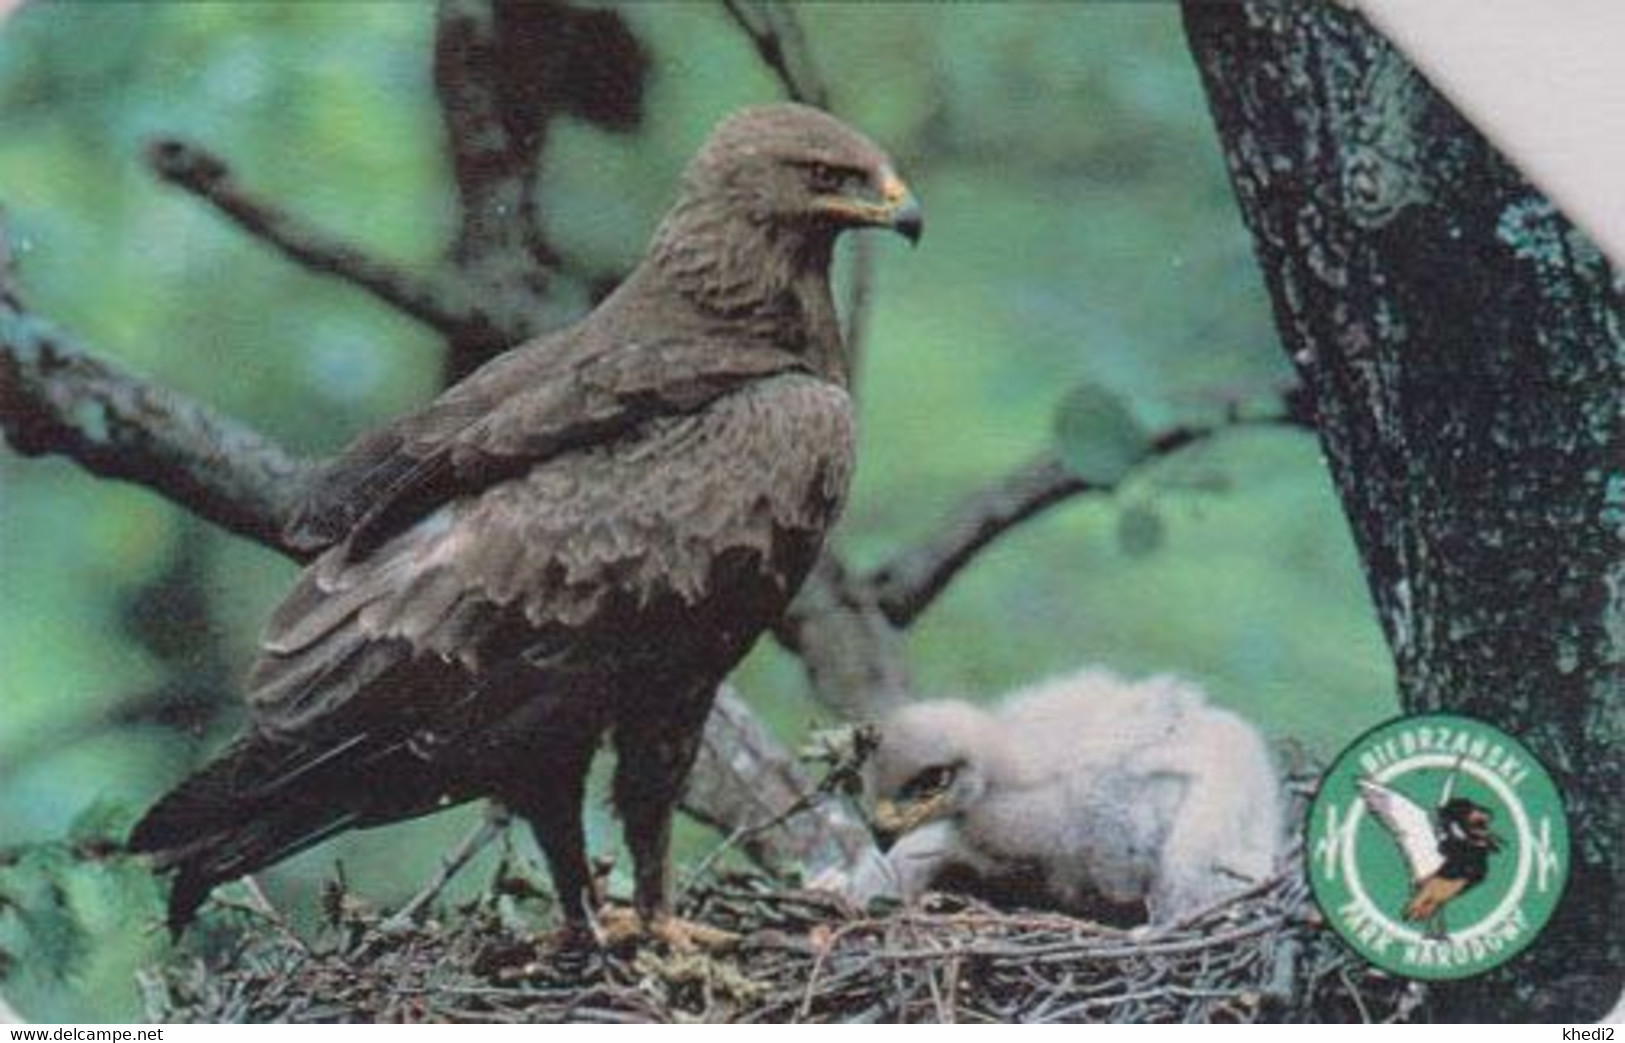 TC POLOGNE - ANIMAL / Série Bierbrzanski Park 4/10 - OISEAU AIGLE POMARIN Au Nid - EAGLE BIRD POLAND Phonecard - BE 5525 - Eagles & Birds Of Prey